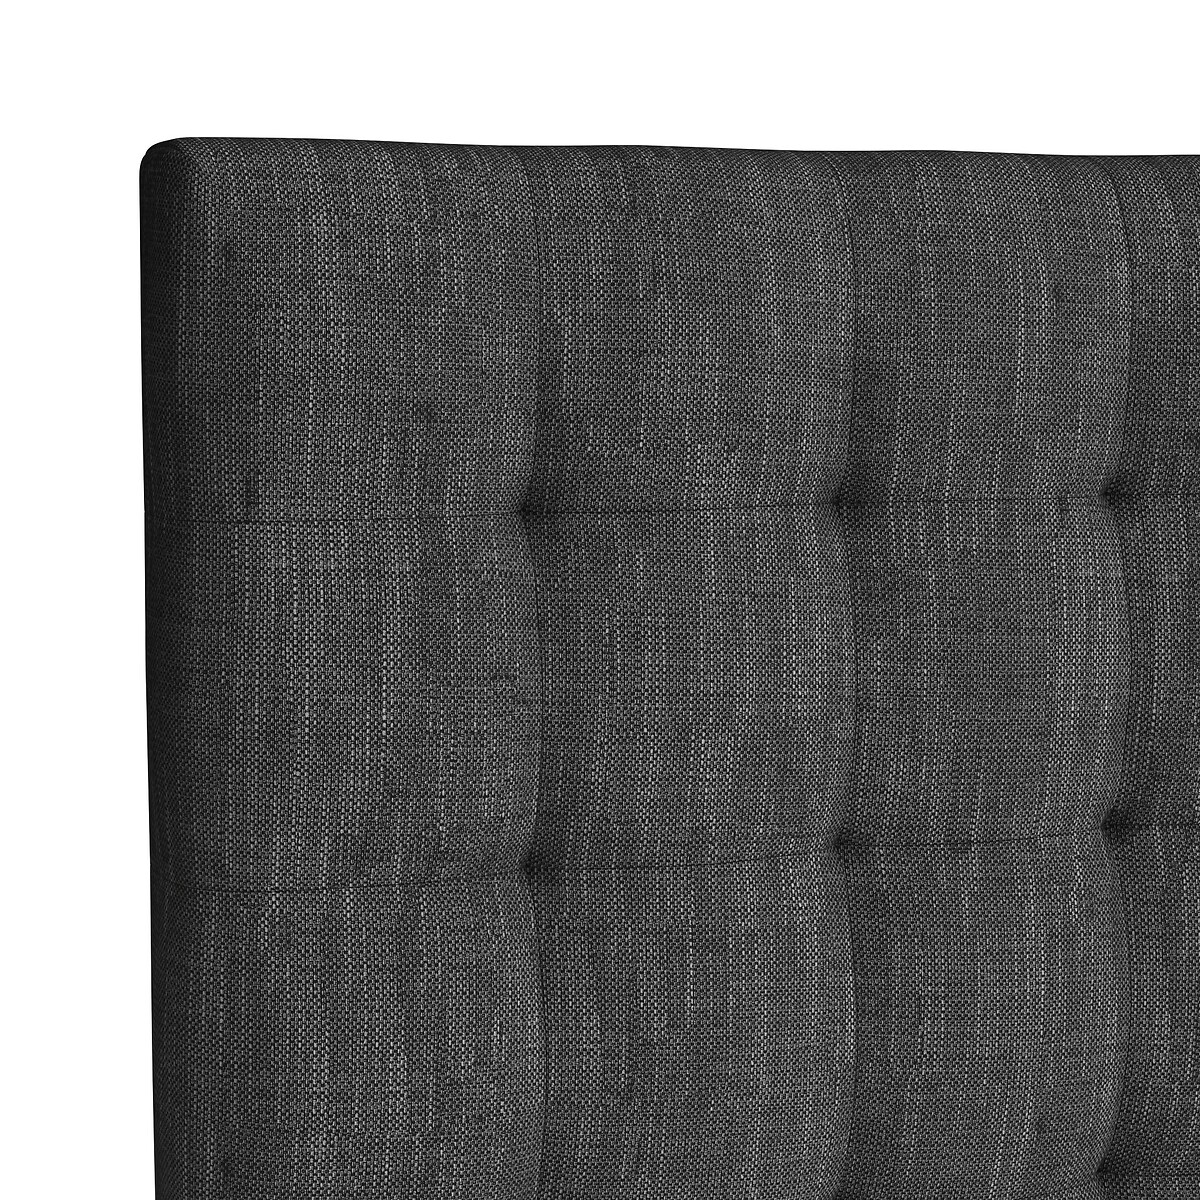 Изголовье La Redoute Кровати Selve высота  см 180 см серый, размер 180 см - фото 3